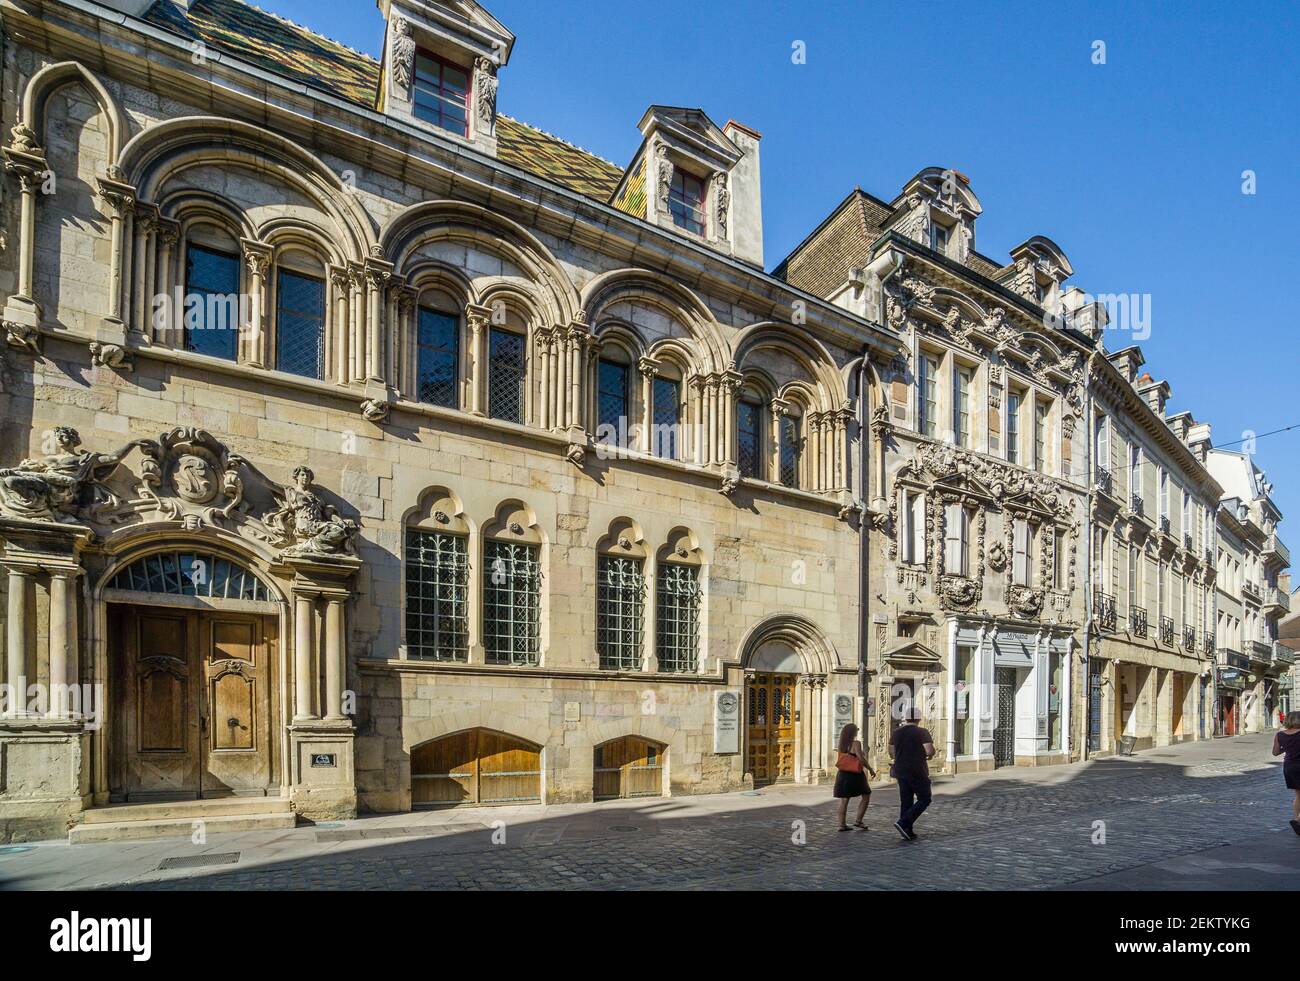 Las fachadas ricamente esculpidas de la mansión del siglo 18 de Hôtel Aubriot y Maison Maillard en Rue de Forges, Dijon, Burgendy, Côte-d'Or departamento, Bo Foto de stock